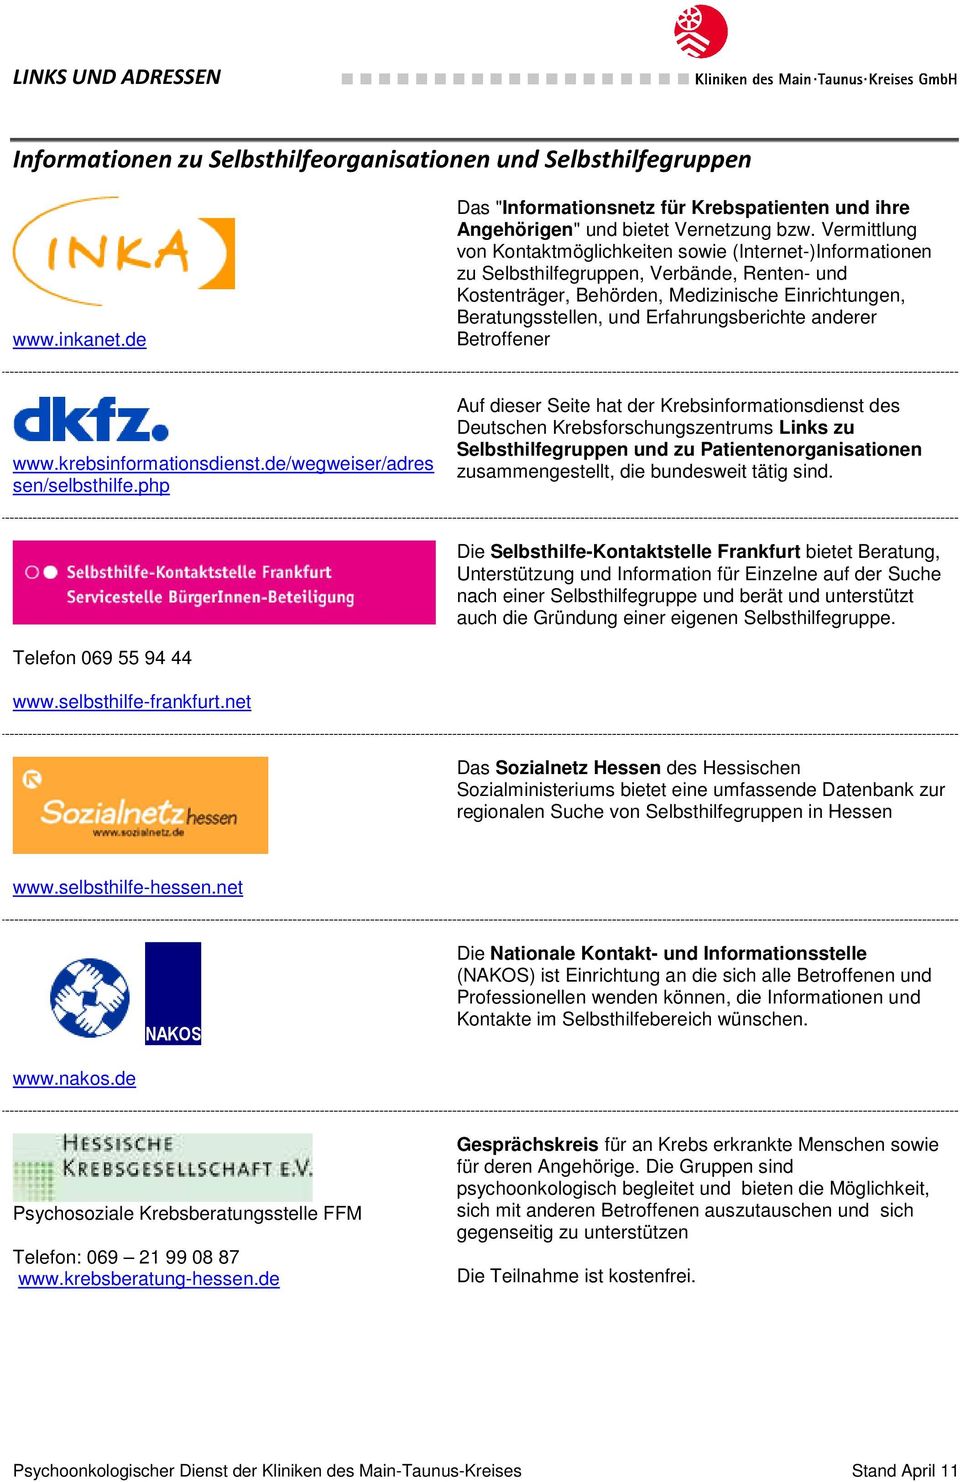 Erfahrungsberichte anderer Betroffener www.krebsinformationsdienst.de/wegweiser/adres sen/selbsthilfe.